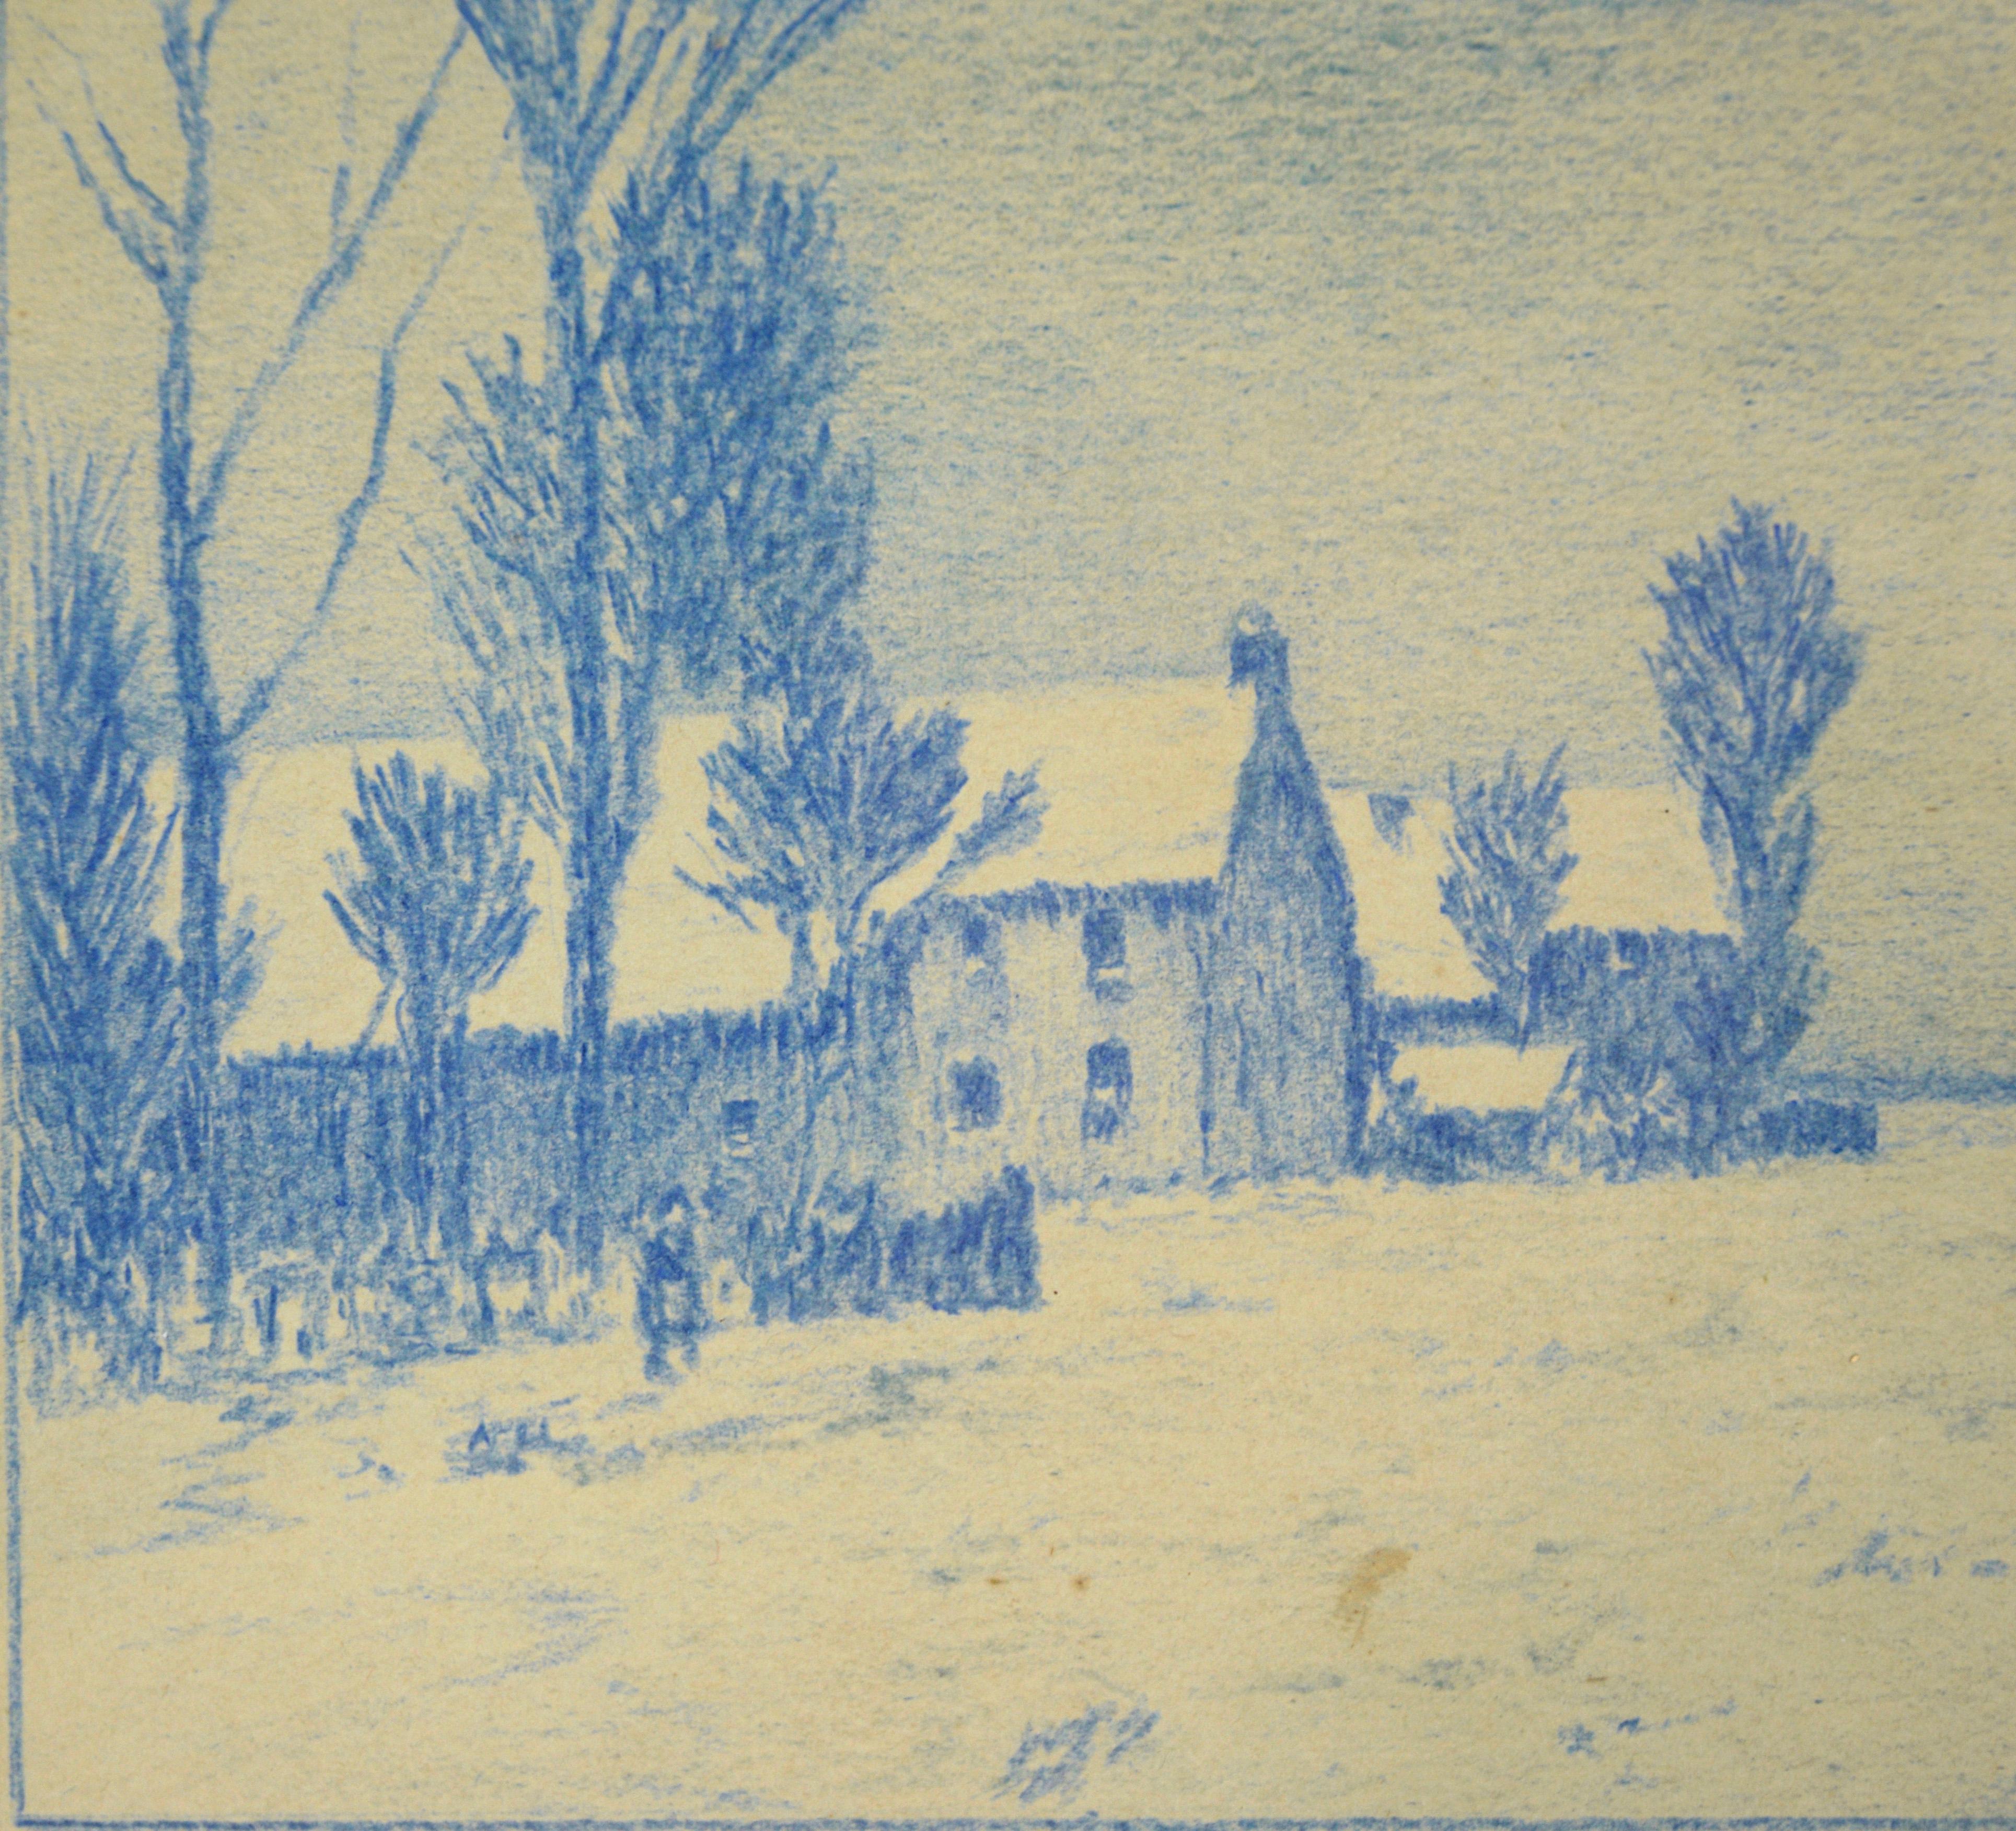 The Blue Street – Monochrome ländliche Stadtlandschaft mit Bleistift auf Papier (Beige), Landscape Art, von Alle Wijtze de Somer